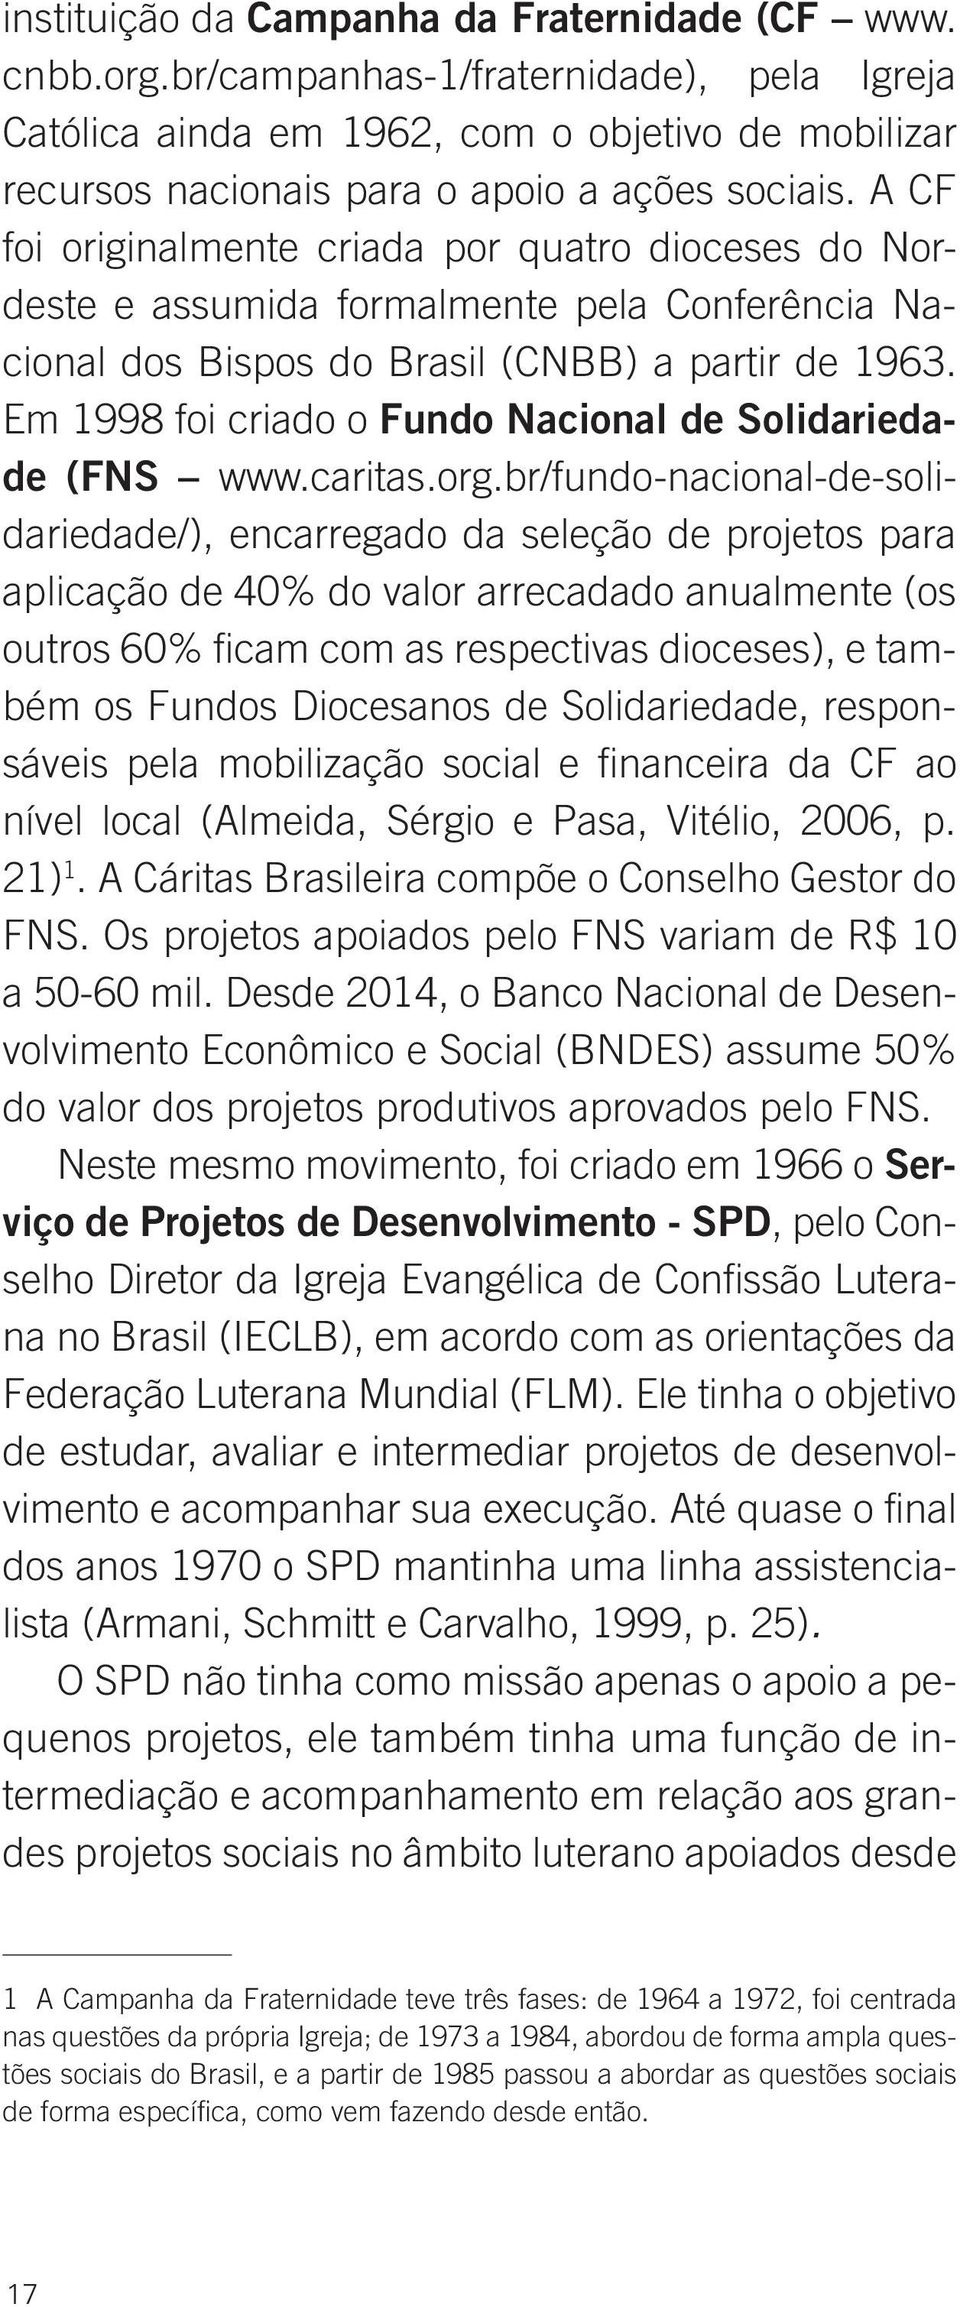 Em 1998 foi criado o Fundo Nacional de Solidariedade (FNS www.caritas.org.